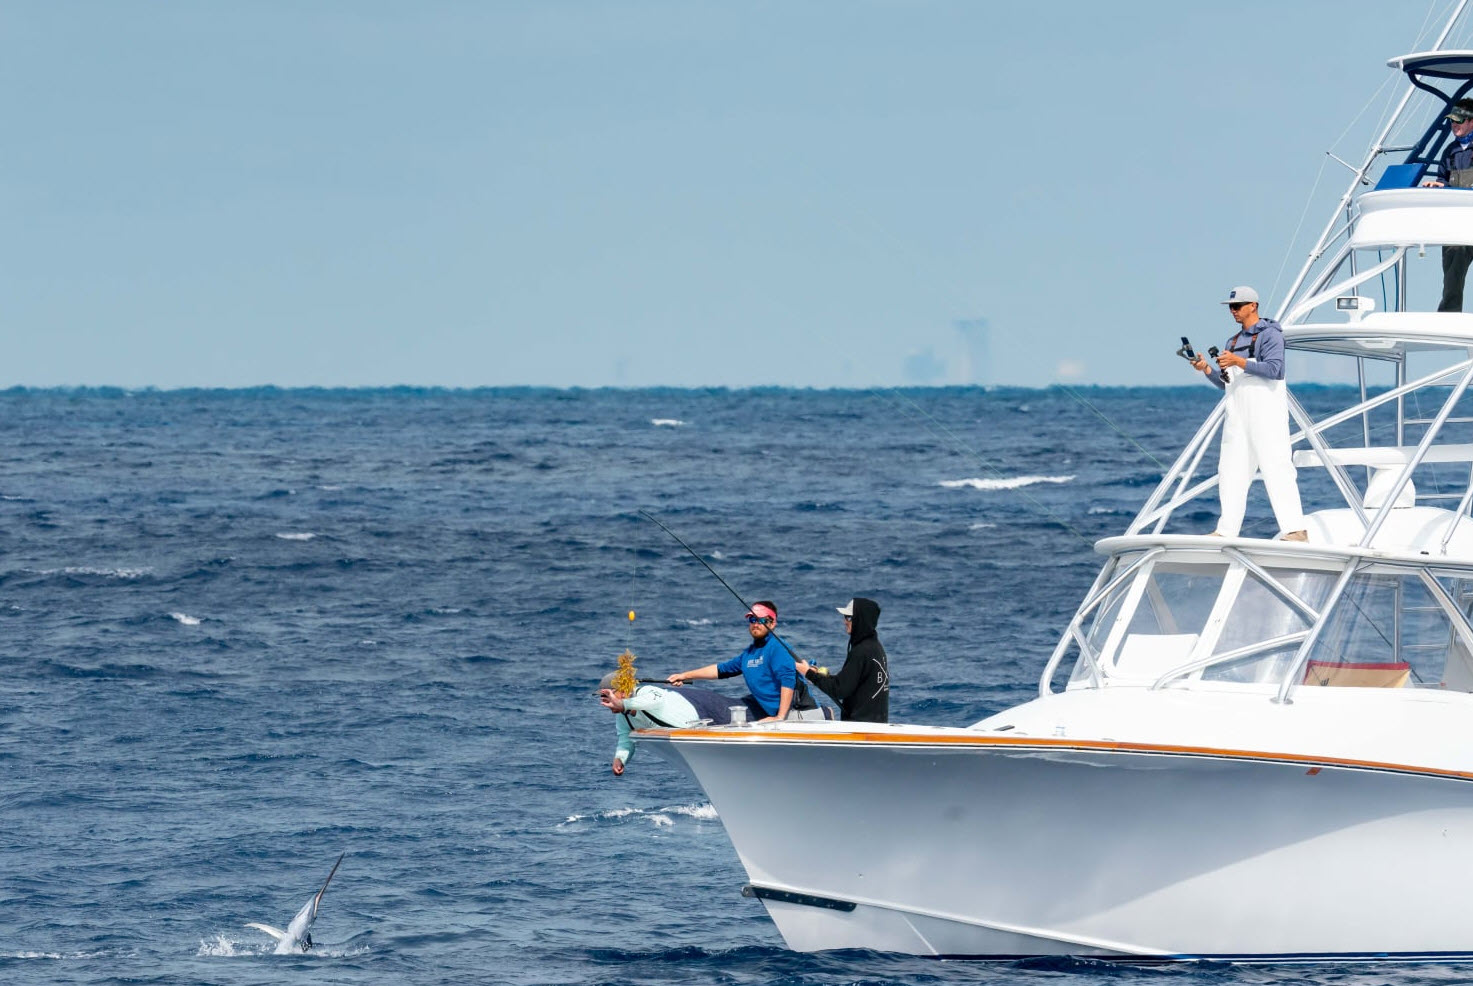 greg graham catching sailfish in tournament